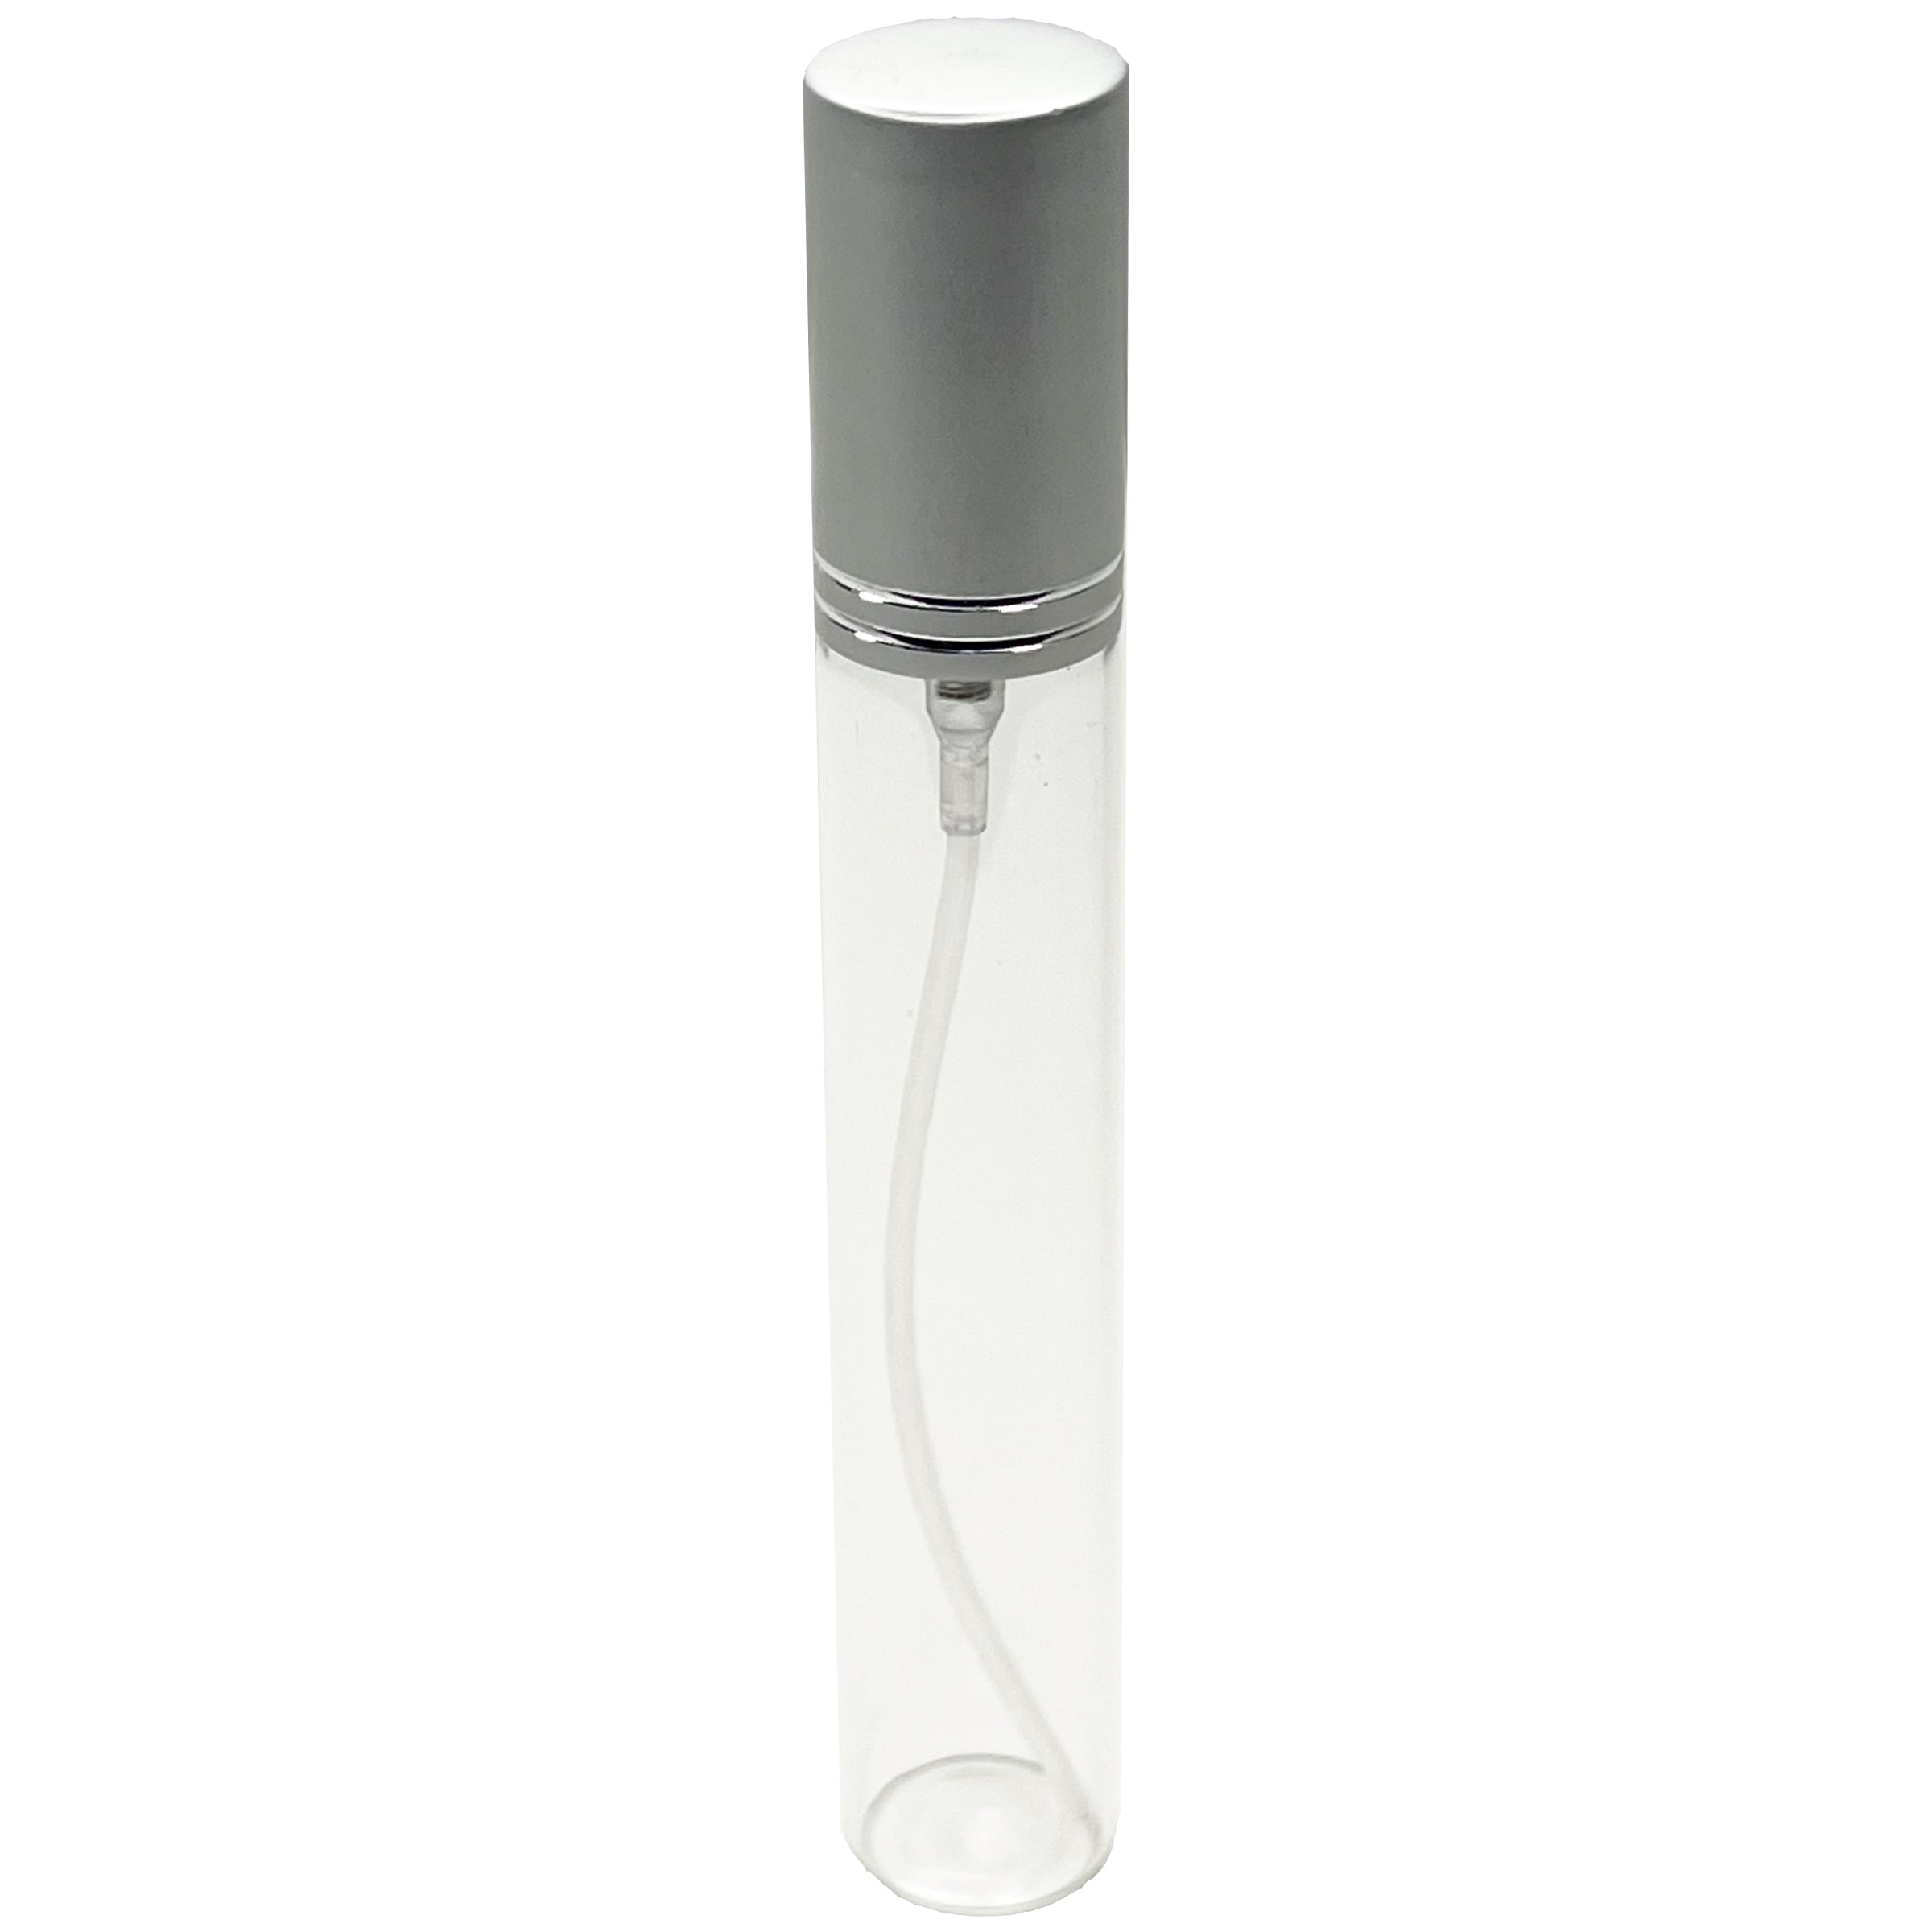 15ml 0.5oz Perfume Glass Spray Bottles Matte Silver Line Cap 1/2 oz